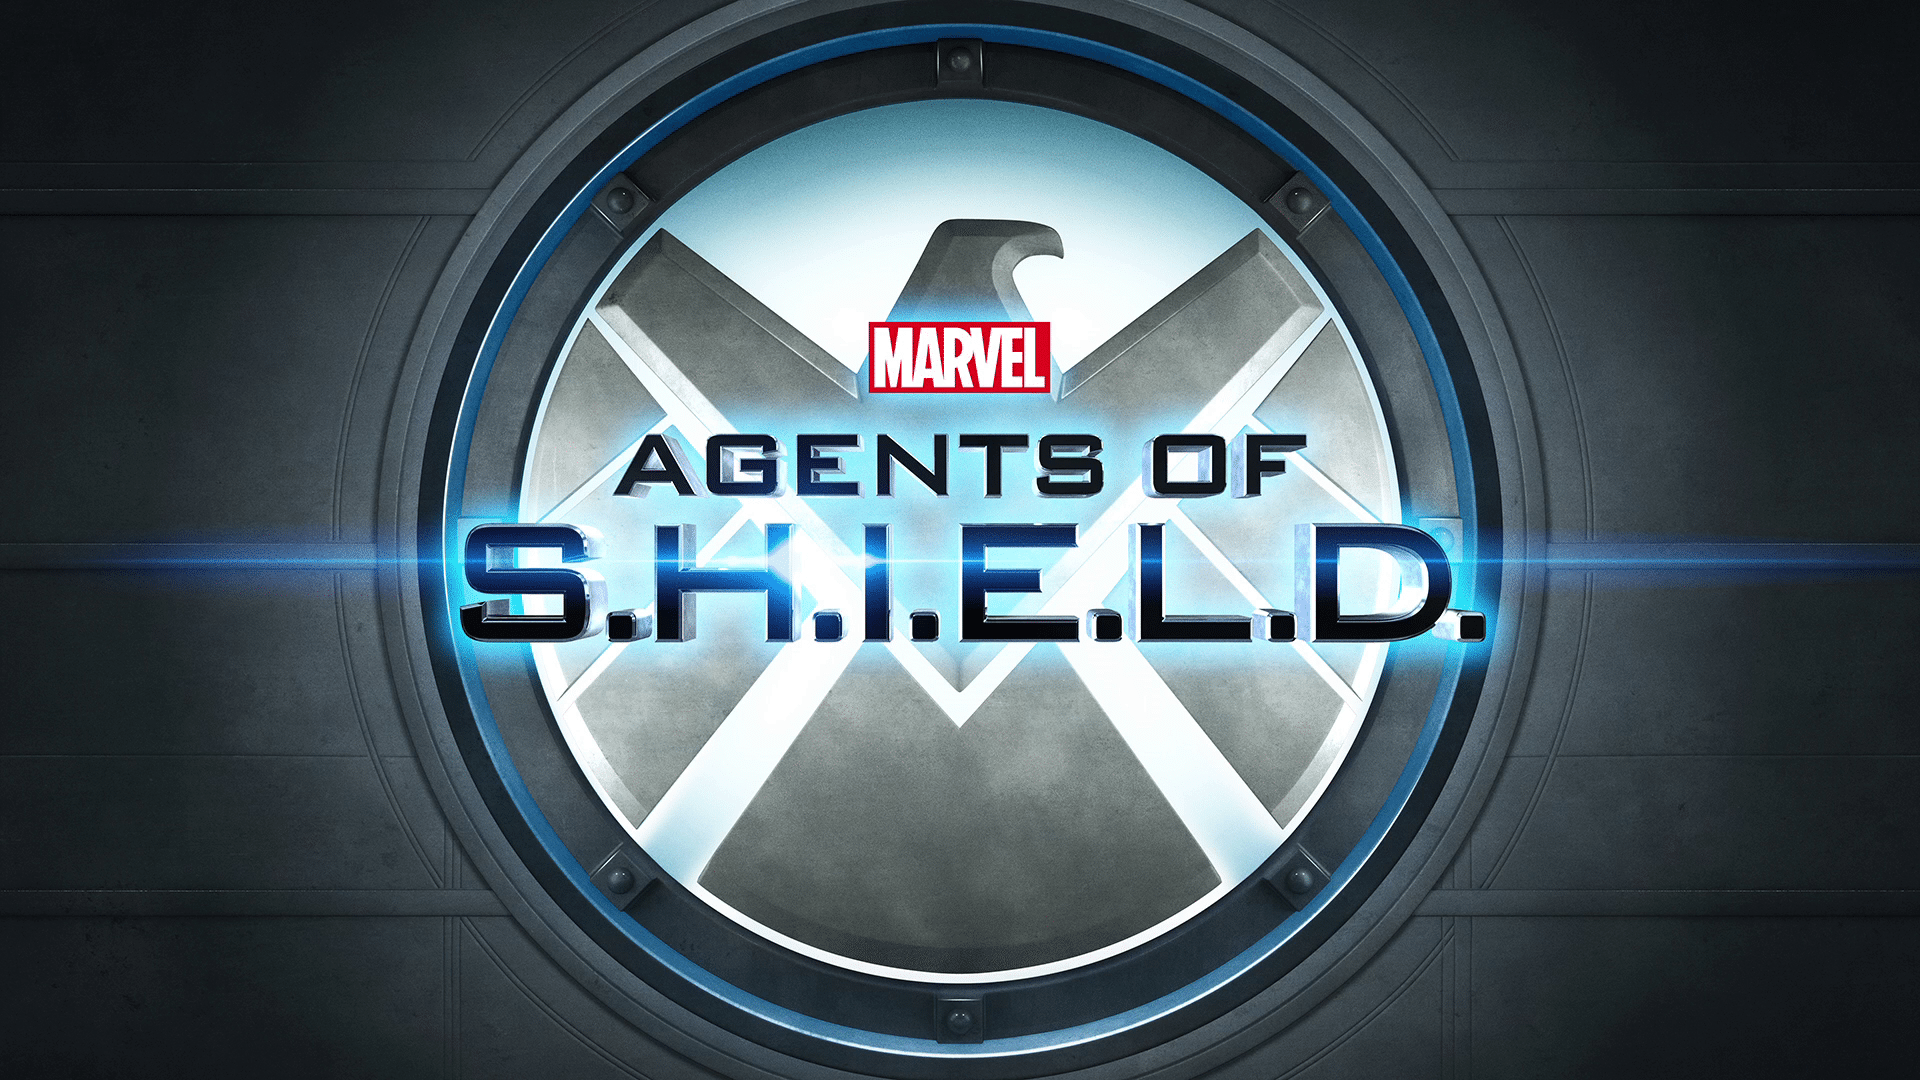 (Agents of S.H.I.E.L.D.)